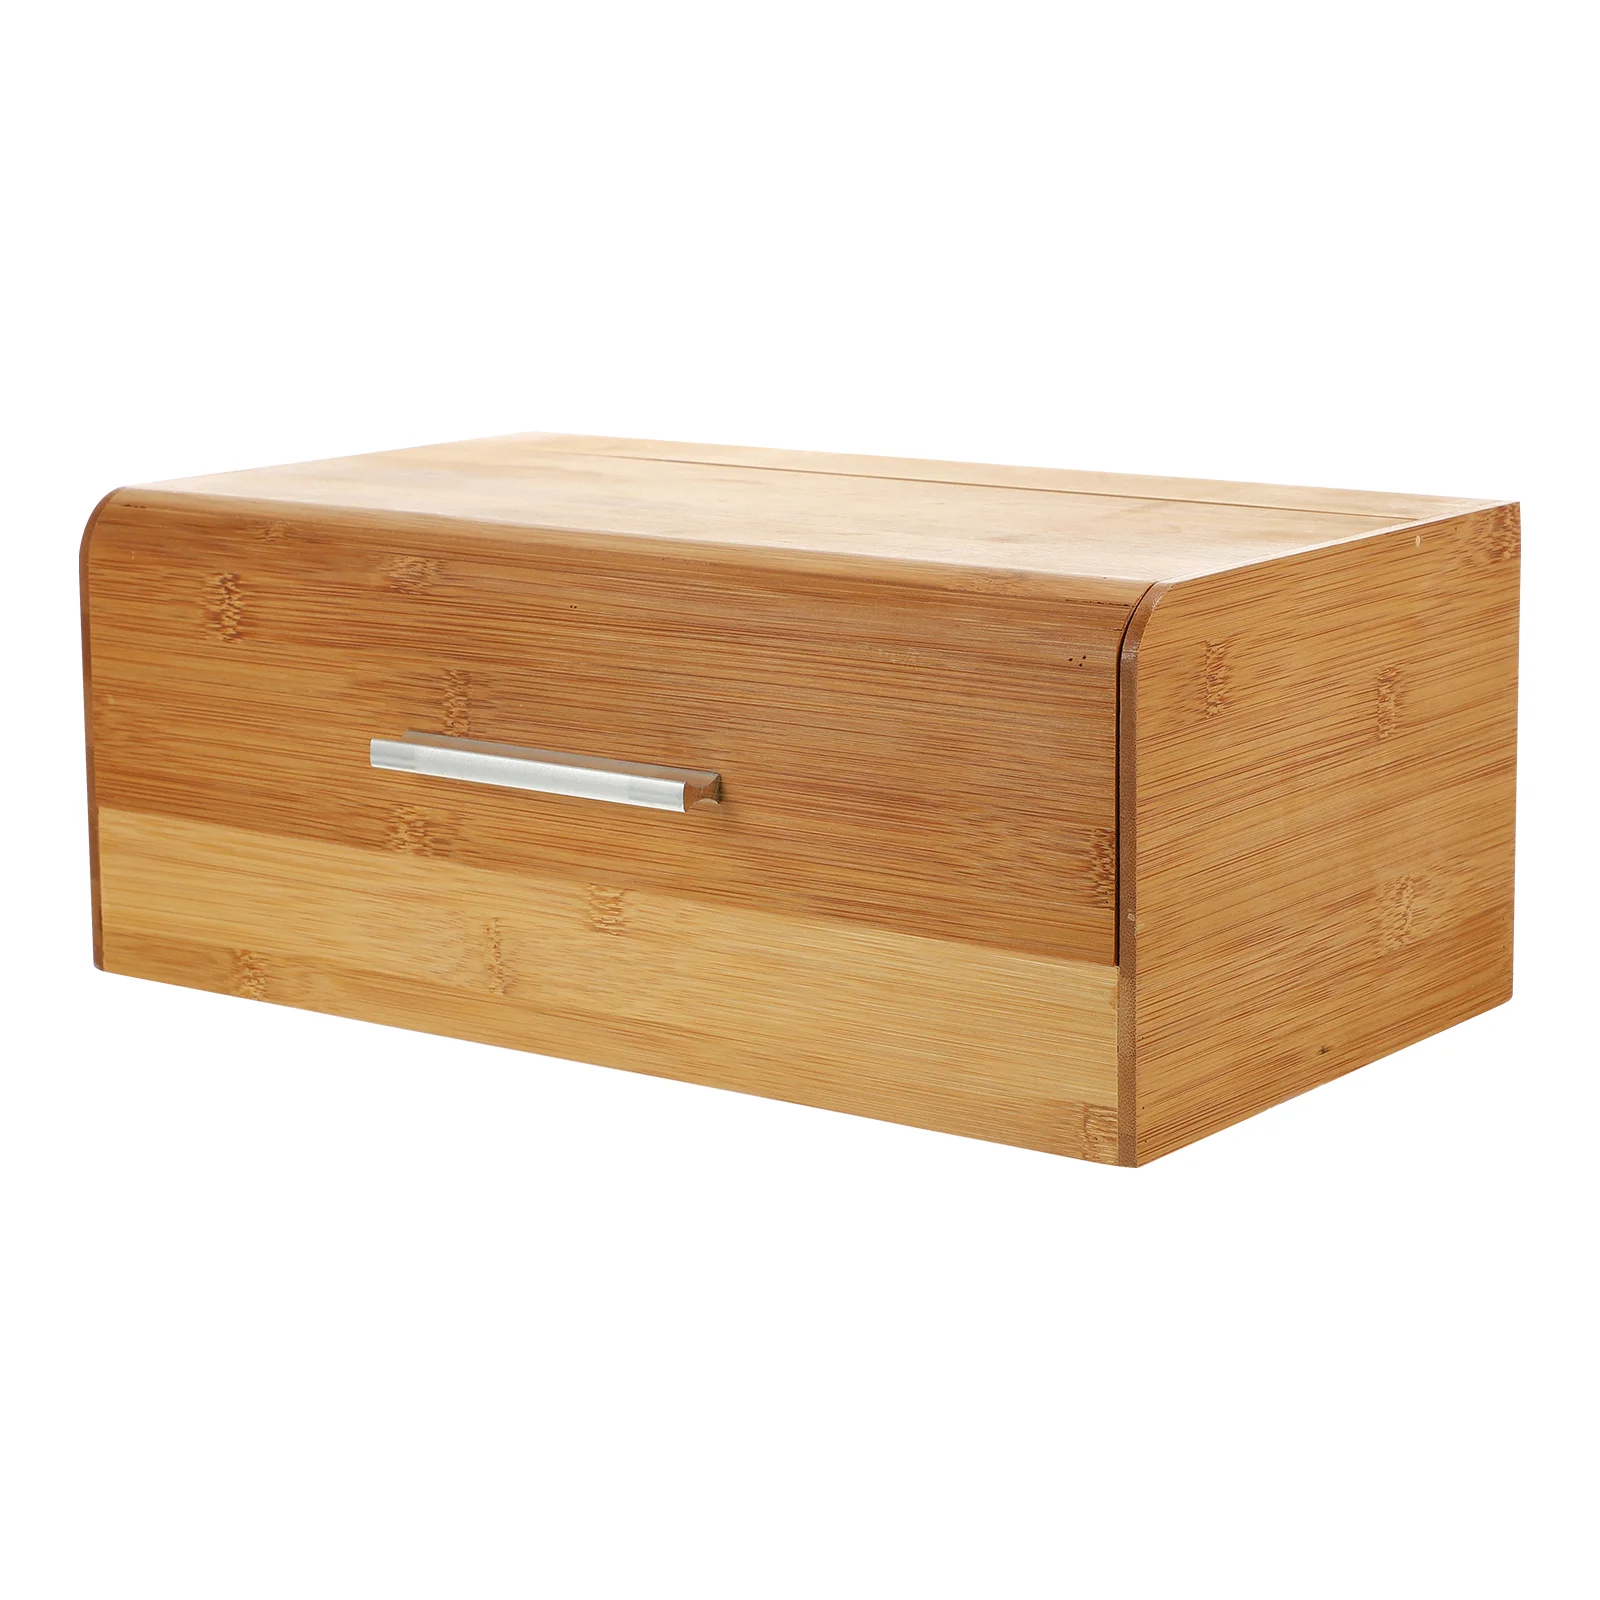 

1 шт. коробка для хлеба, бамбуковая корзина для хранения, новый пищевой контейнер (разные цвета)